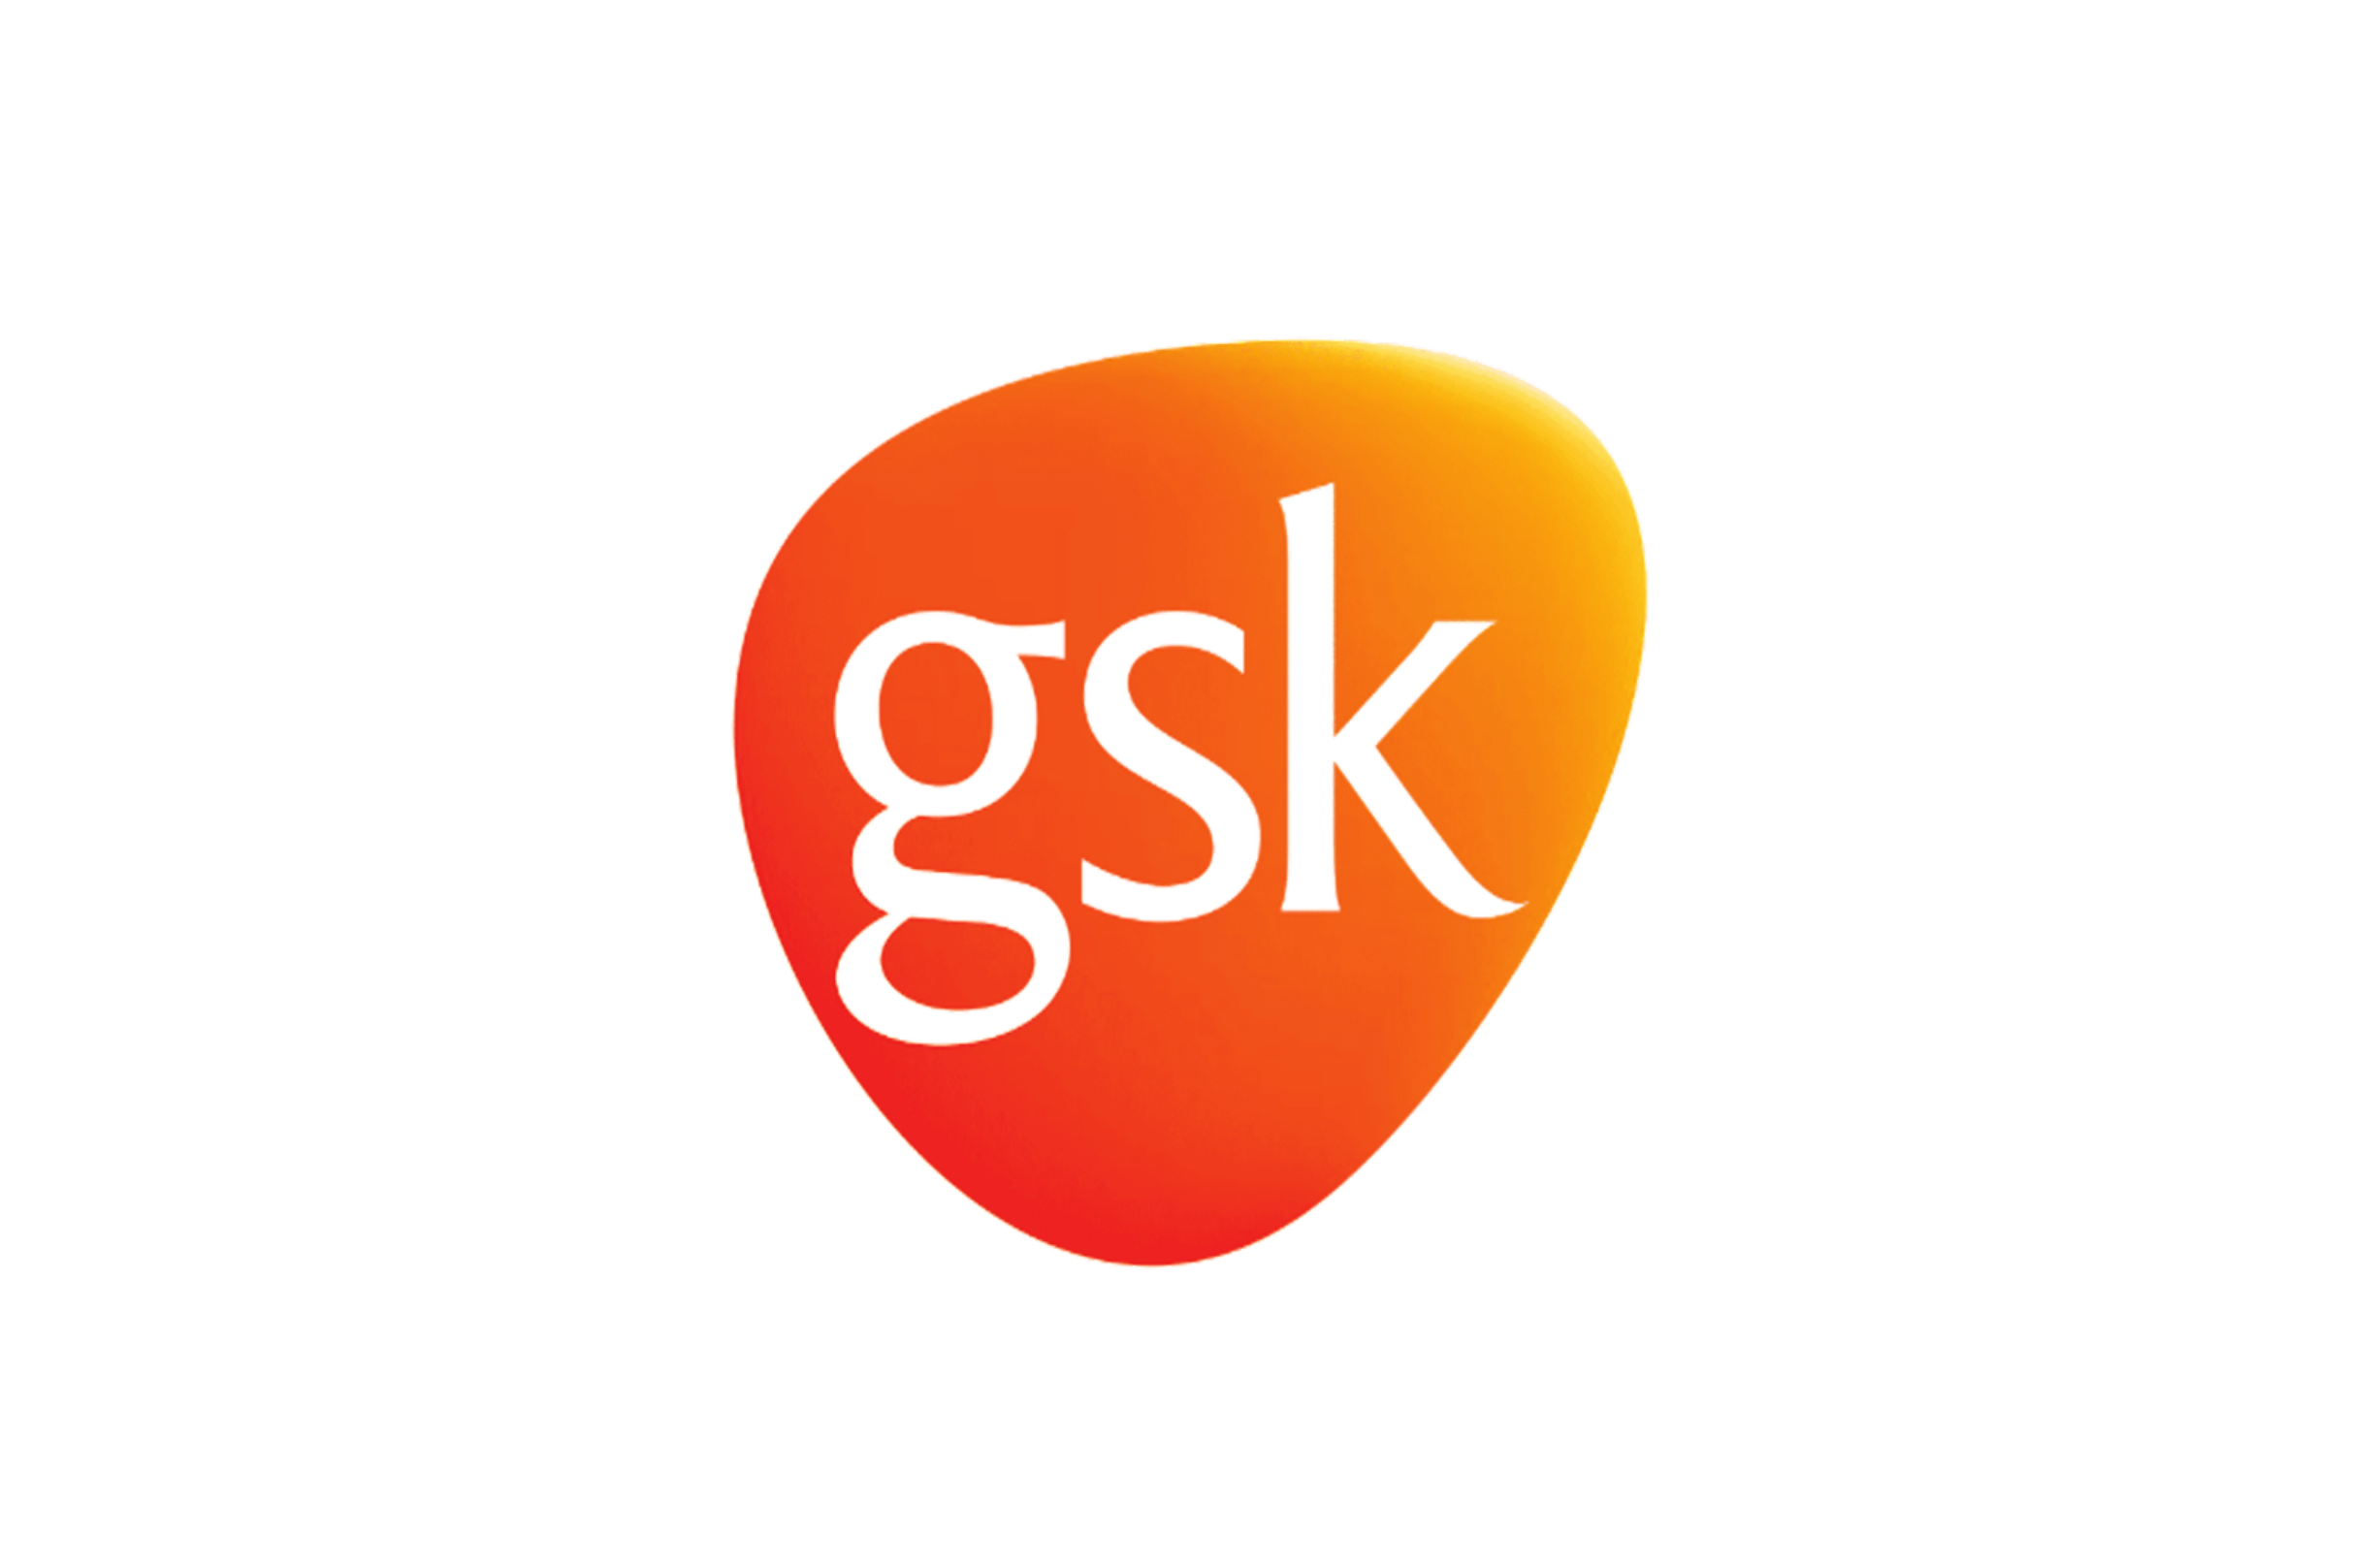 gsk_logo-2